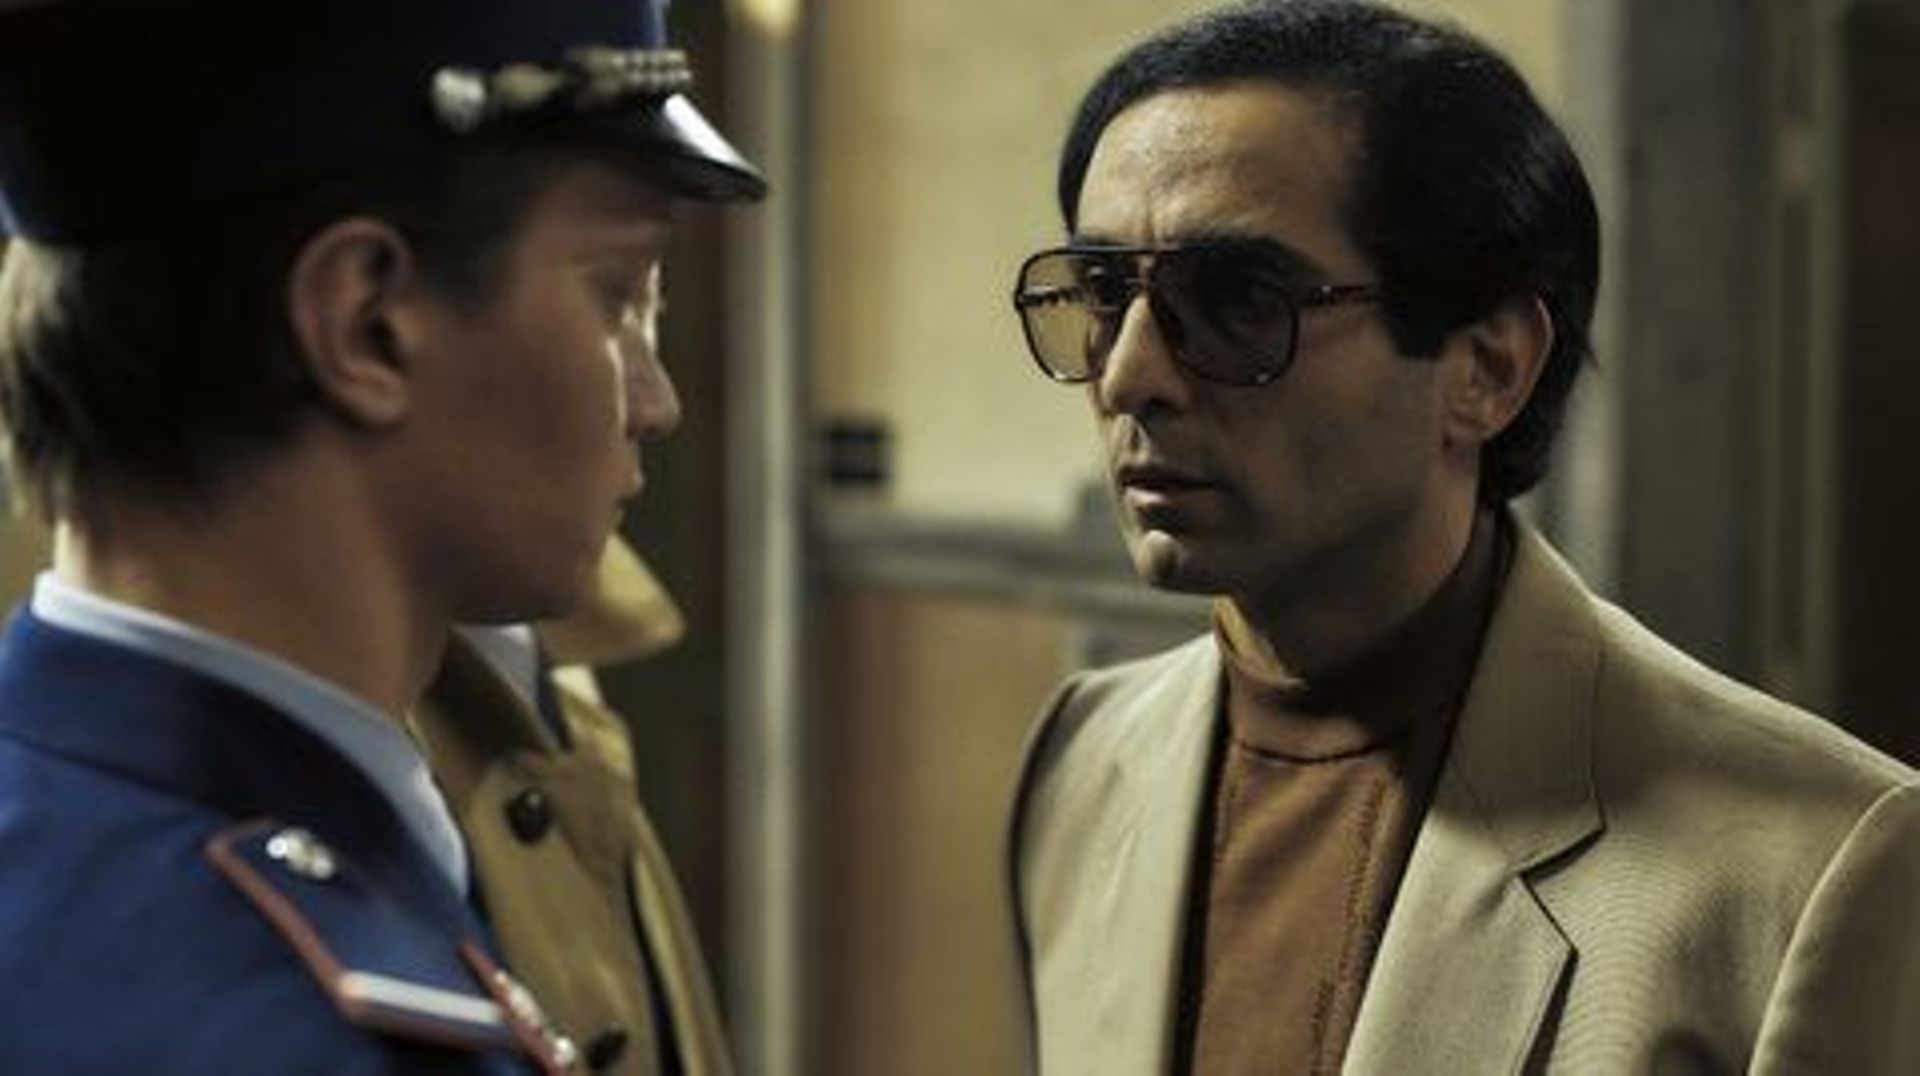 Extrait de la série '1985', le personnage d’un jeune gendarme interprété par Tijmen Govaerts confronté au personnage de Madani Bouhouche interprété par Roda Fawaz,